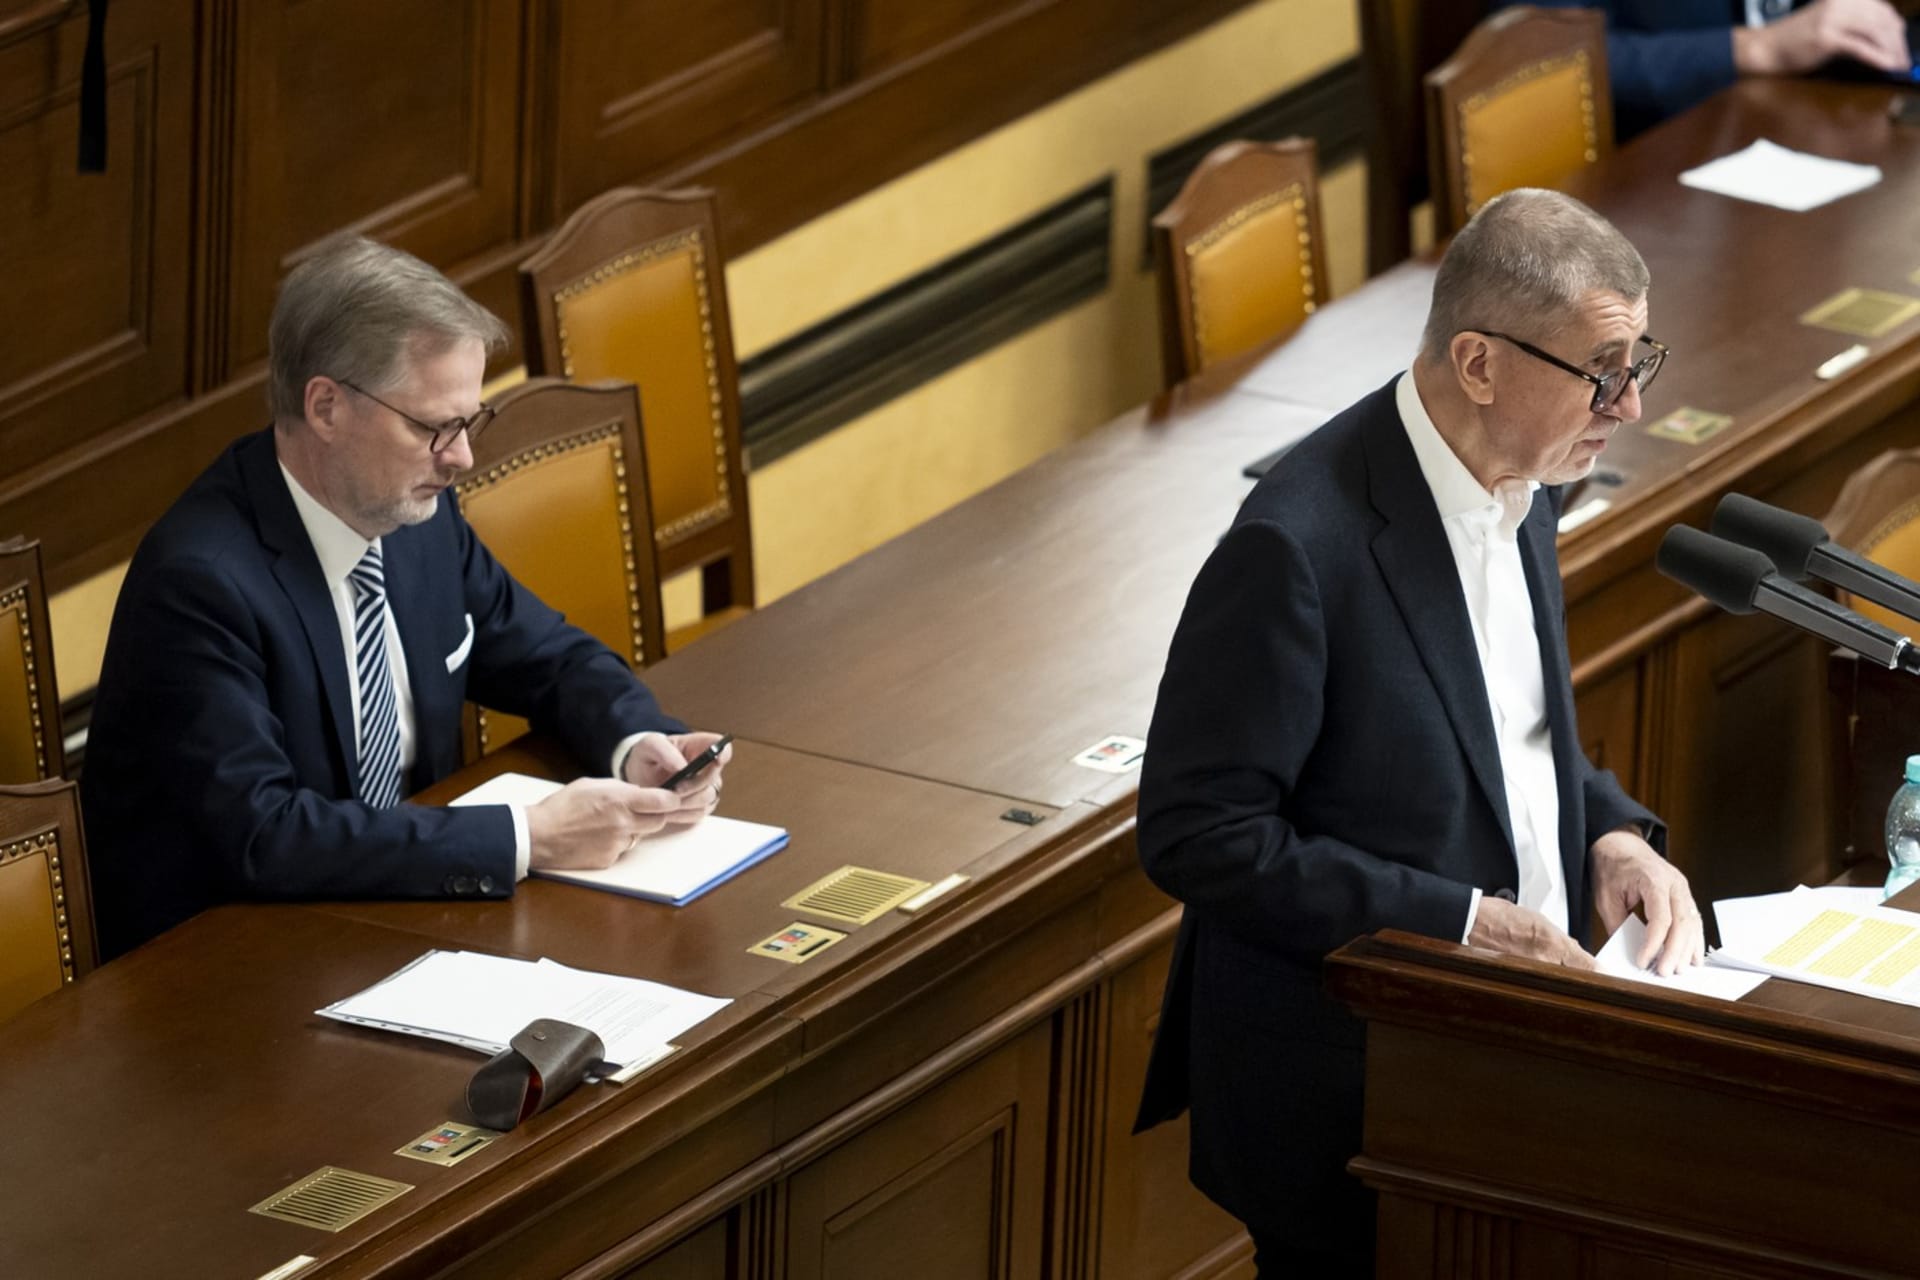 Premiér Petr Fiala (ODS) a Andrej Babiš (ANO) ve Sněmovně